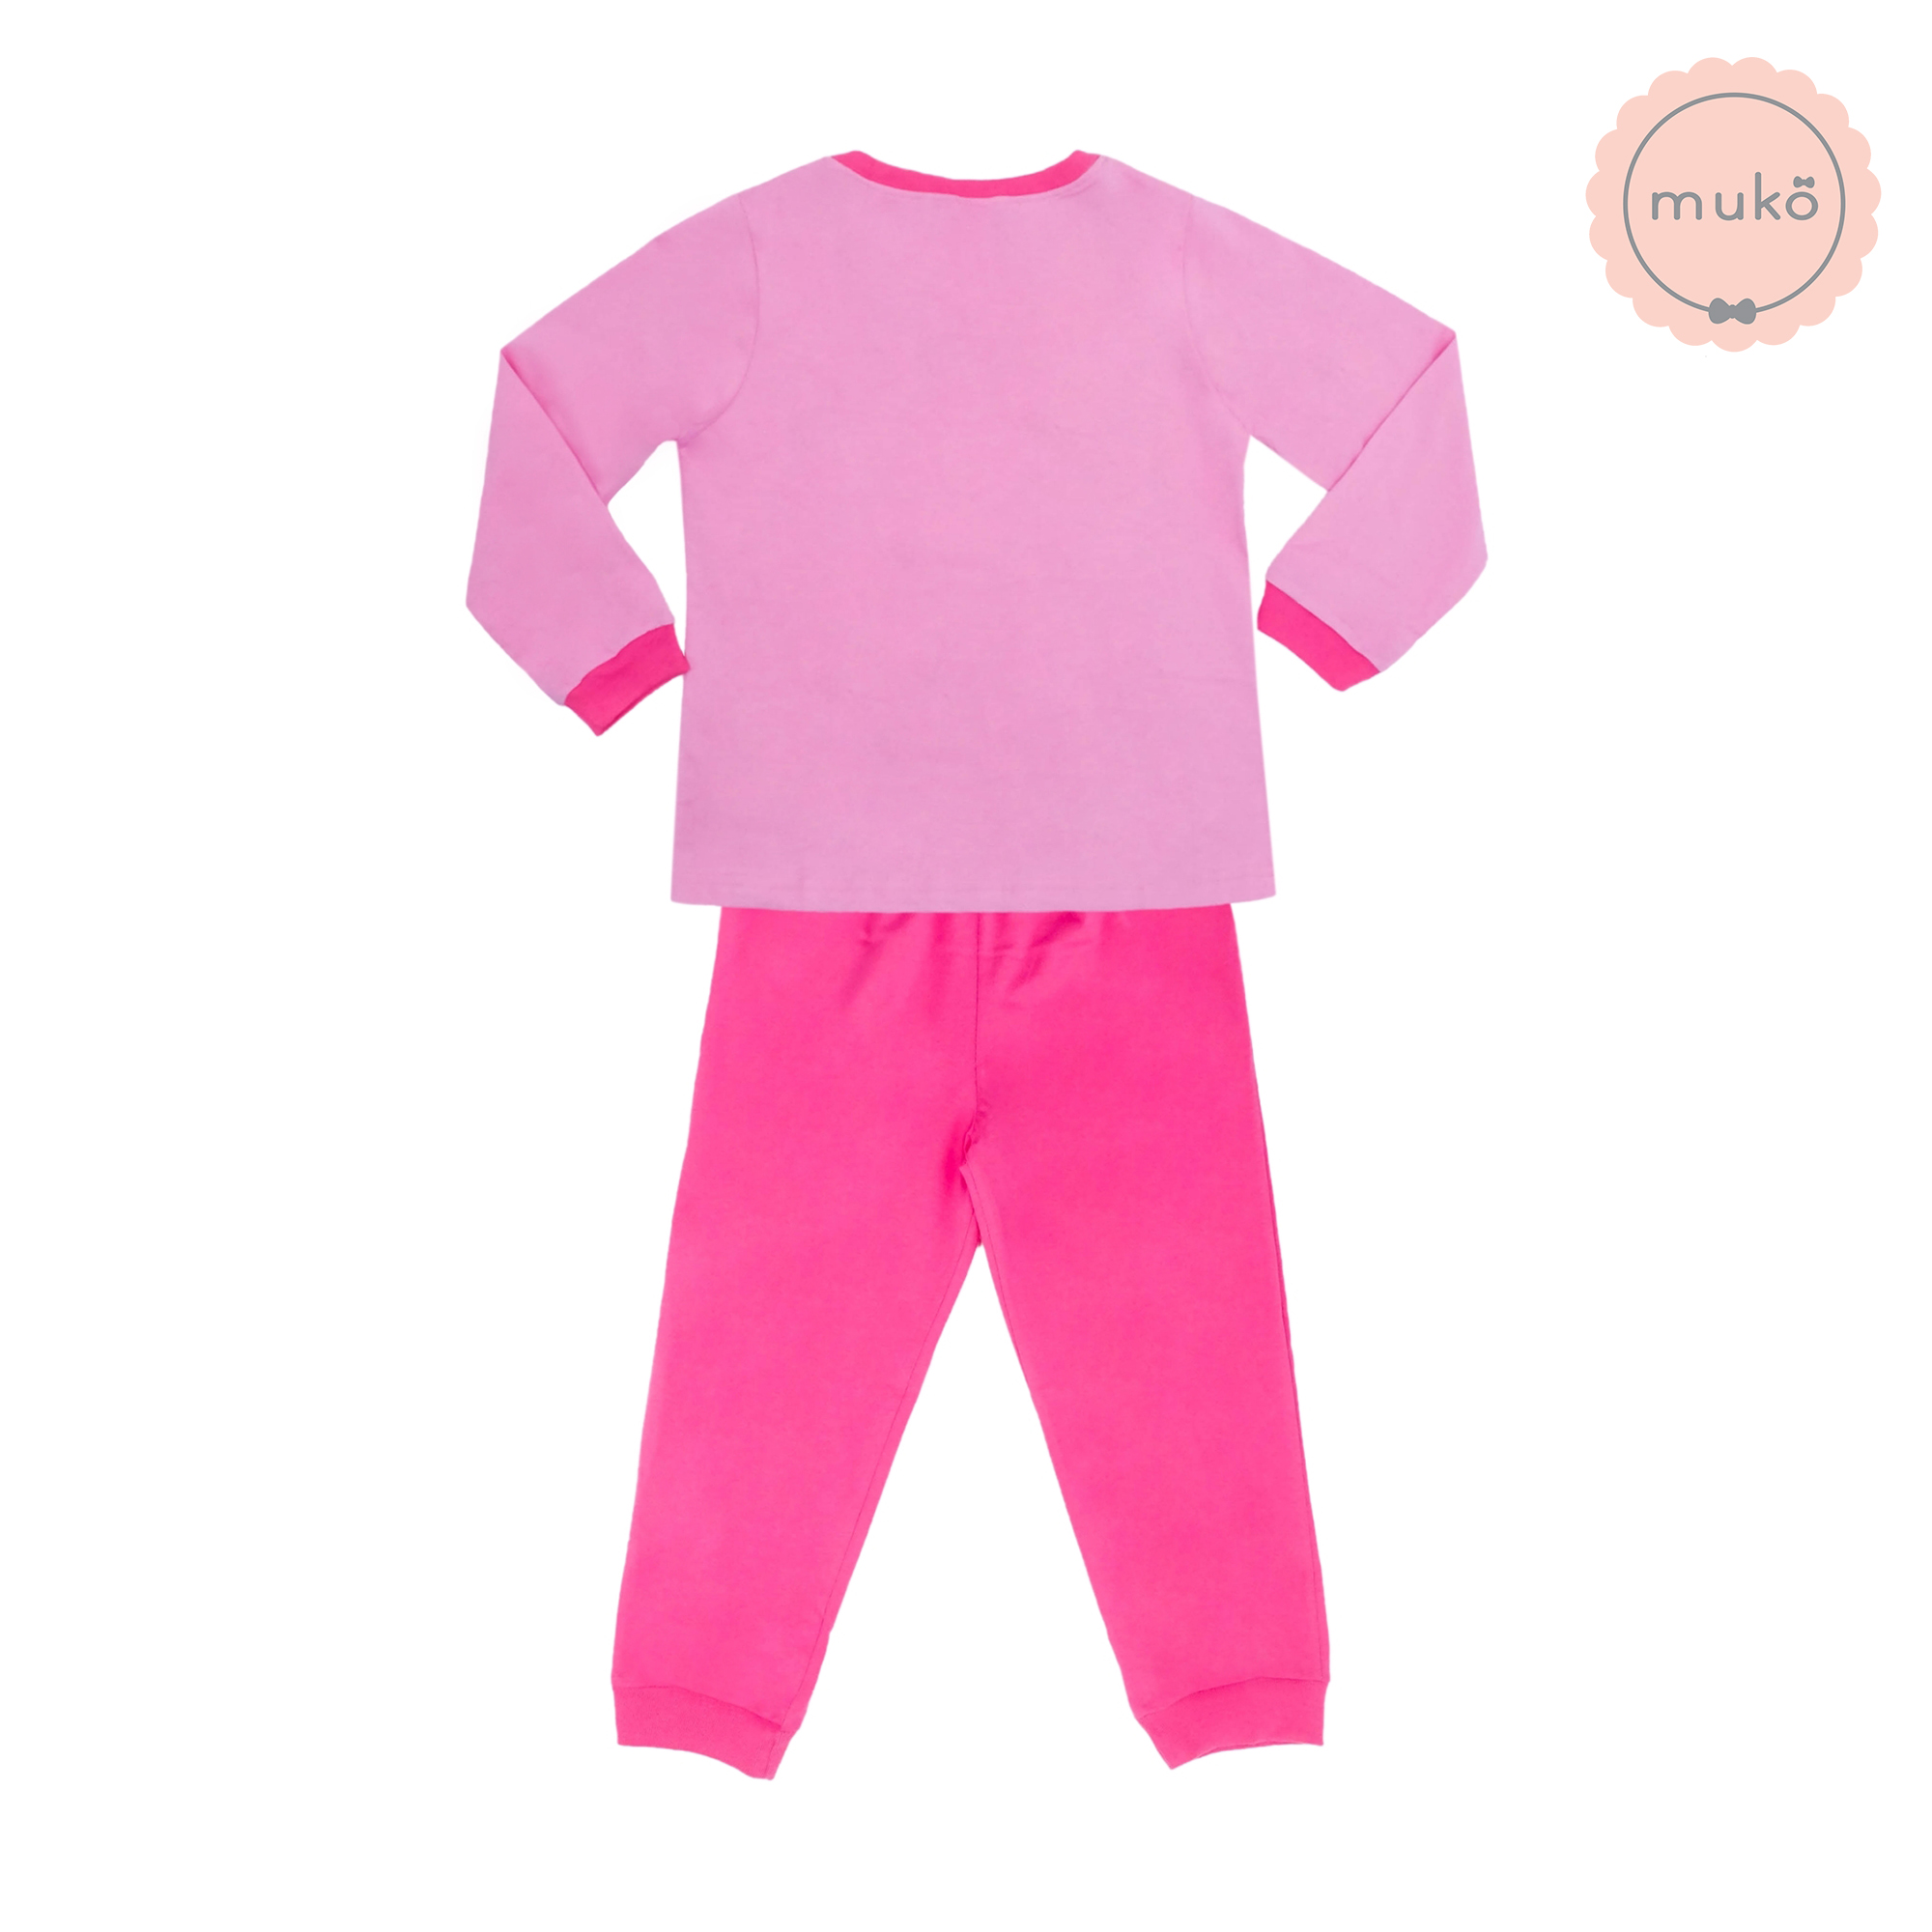 ชุดเด็ก 7-10 ขวบ แขนยาว-ขายาว (Size XL) DPC127-03-XL-Pink XL ลาย เจ้าหญิงเบลล์ Belle (เสื้อชมพูกางเกงชมพูเข้ม)